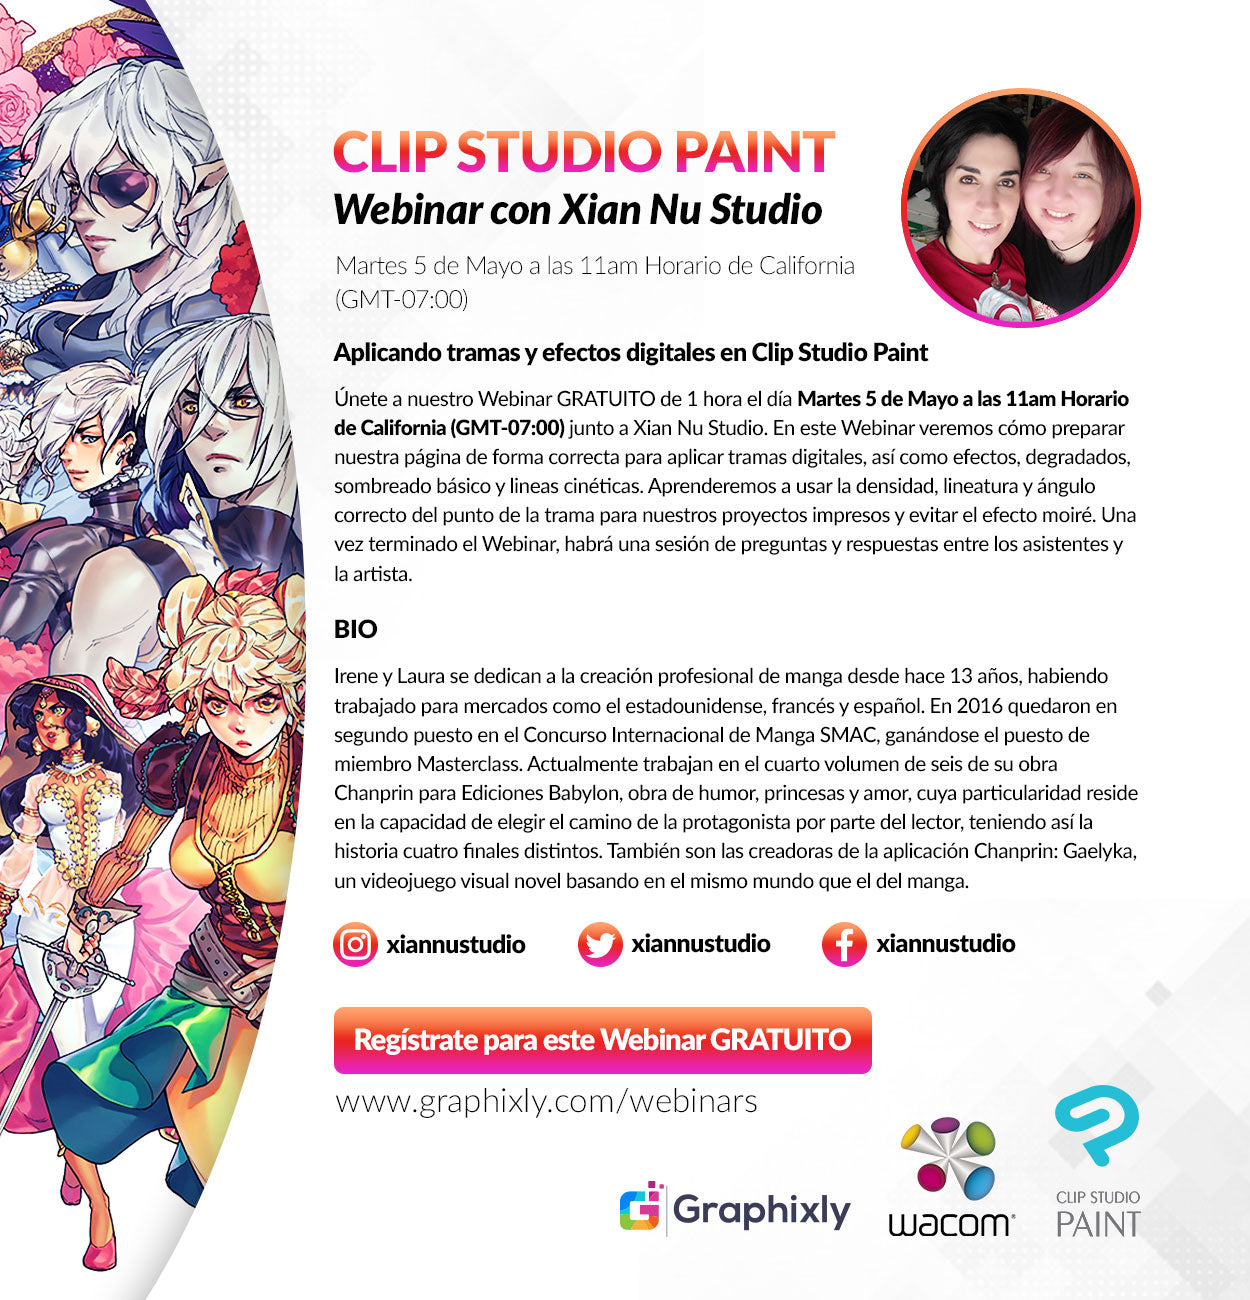 Webinar en español - Aplicando tramas y efectos digitales en Clip Studio Paint con Xian Nu Studio